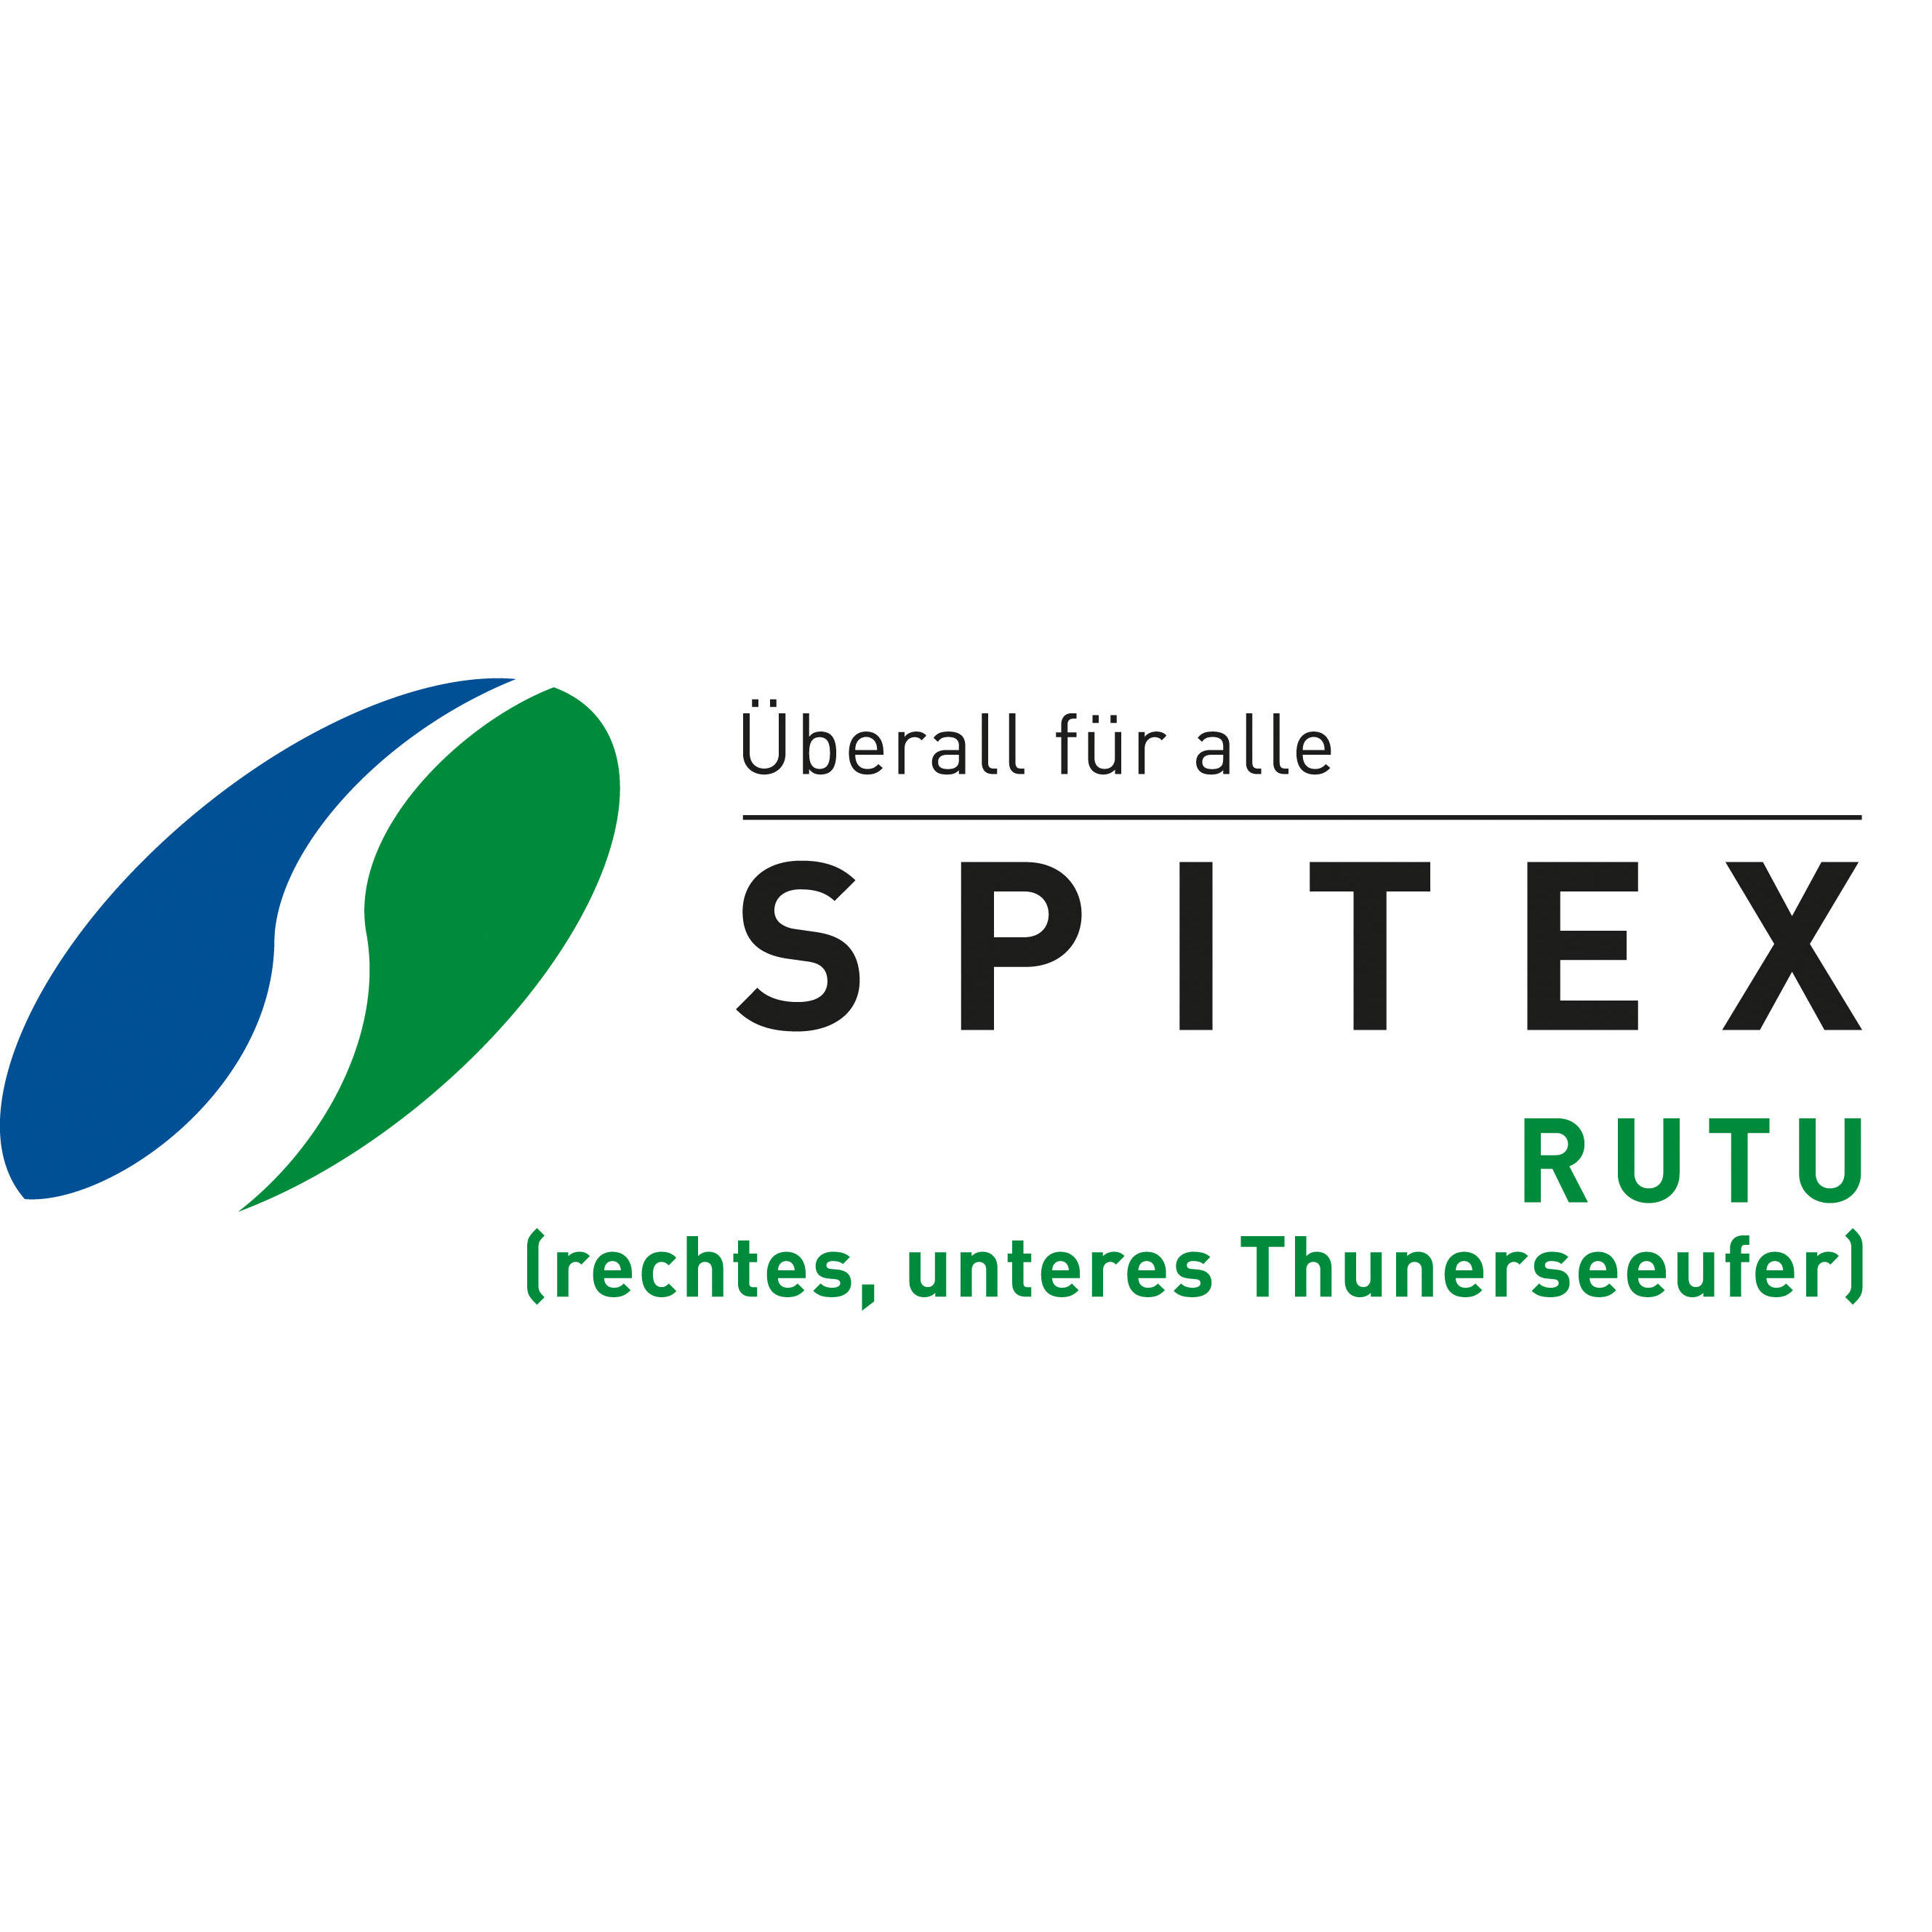 SPITEX-Dienste RUTU (rechtes, unteres Thunerseeufer) Logo